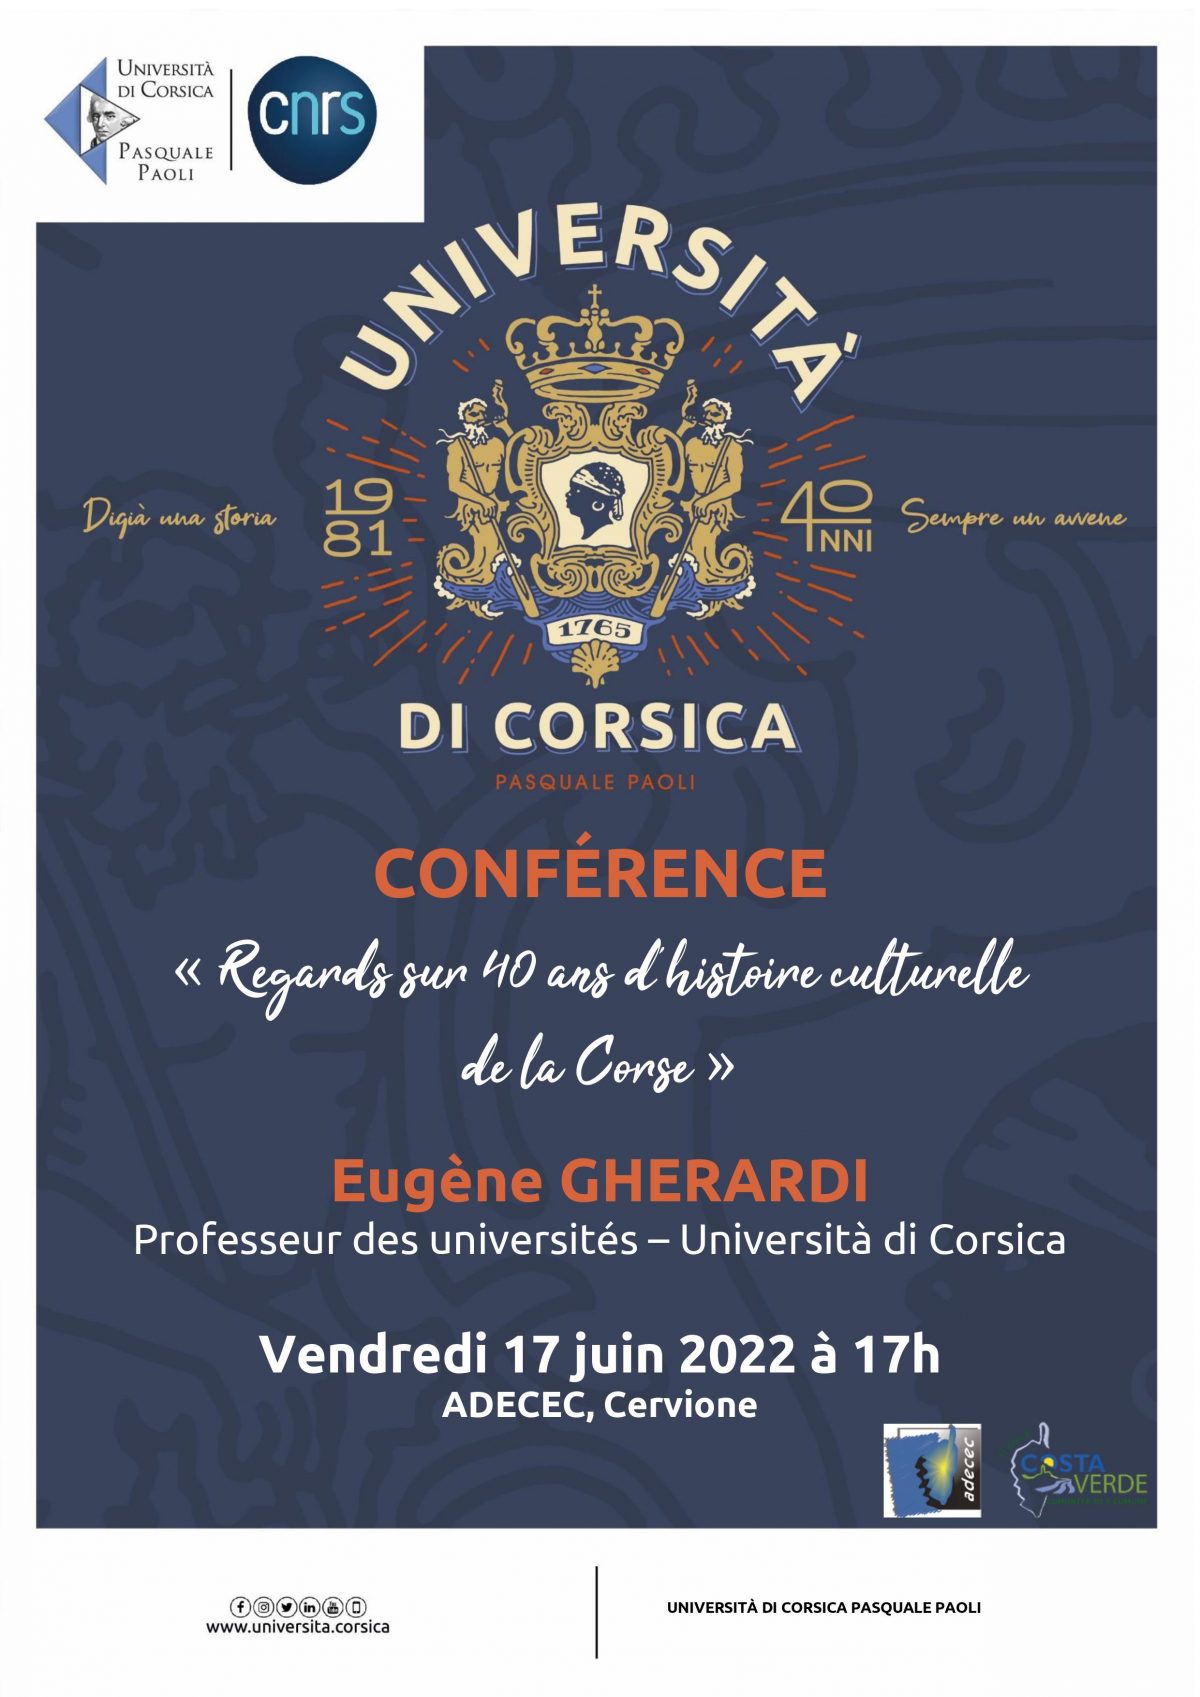 Conférence « Regards sur 40 ans d’histoire culturelle de la Corse » Eugène GHERARDI